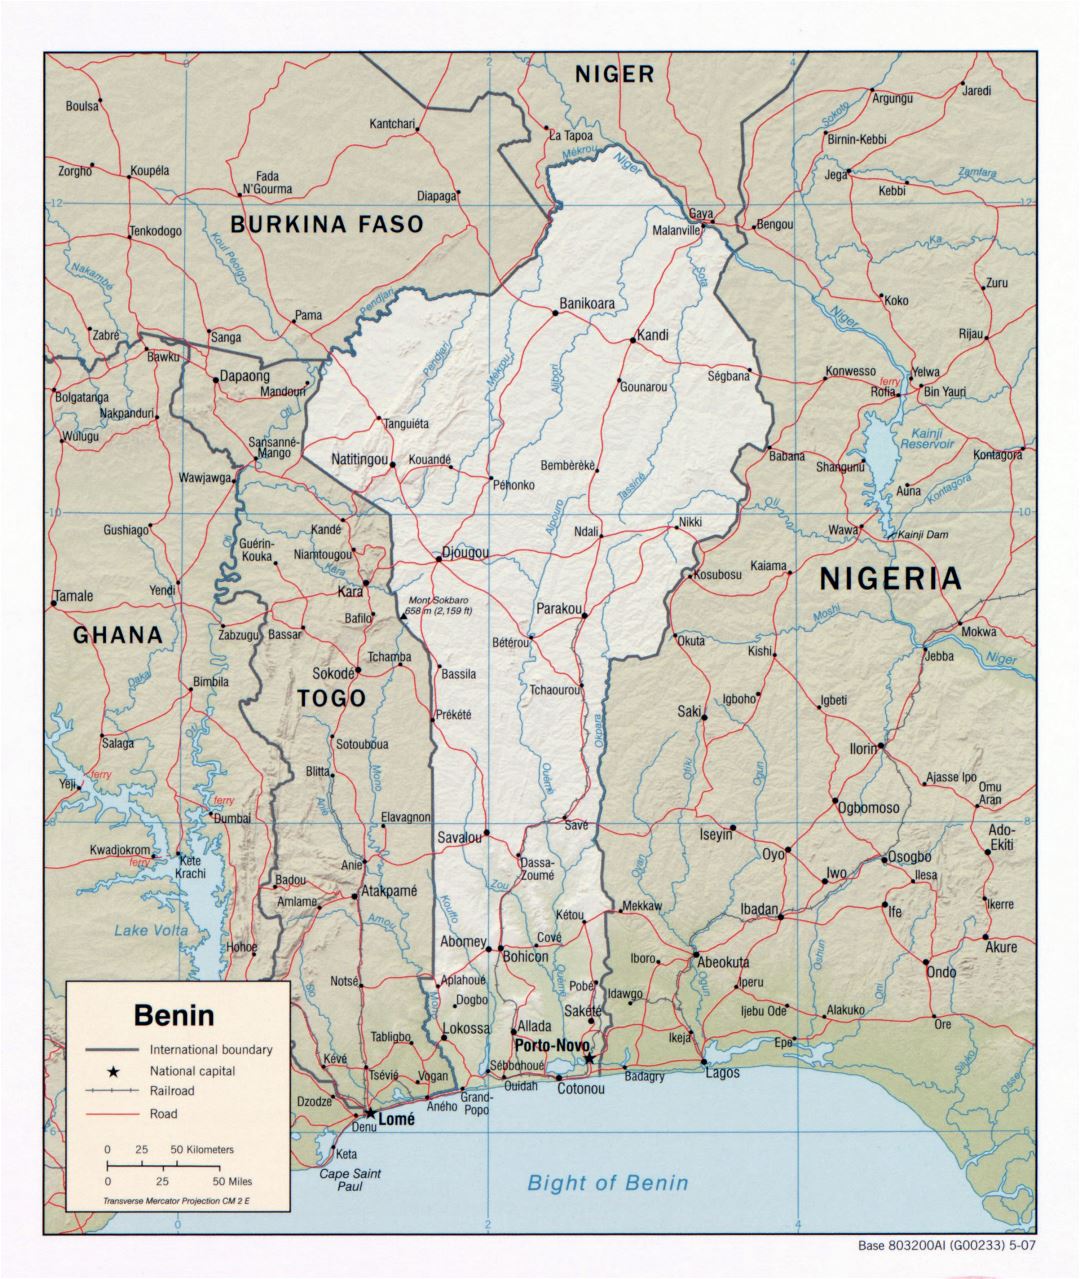 Крупномасштабная детальная политическая карта Бенина с рельефом, дорогами, железными дорогами и городами - 2007